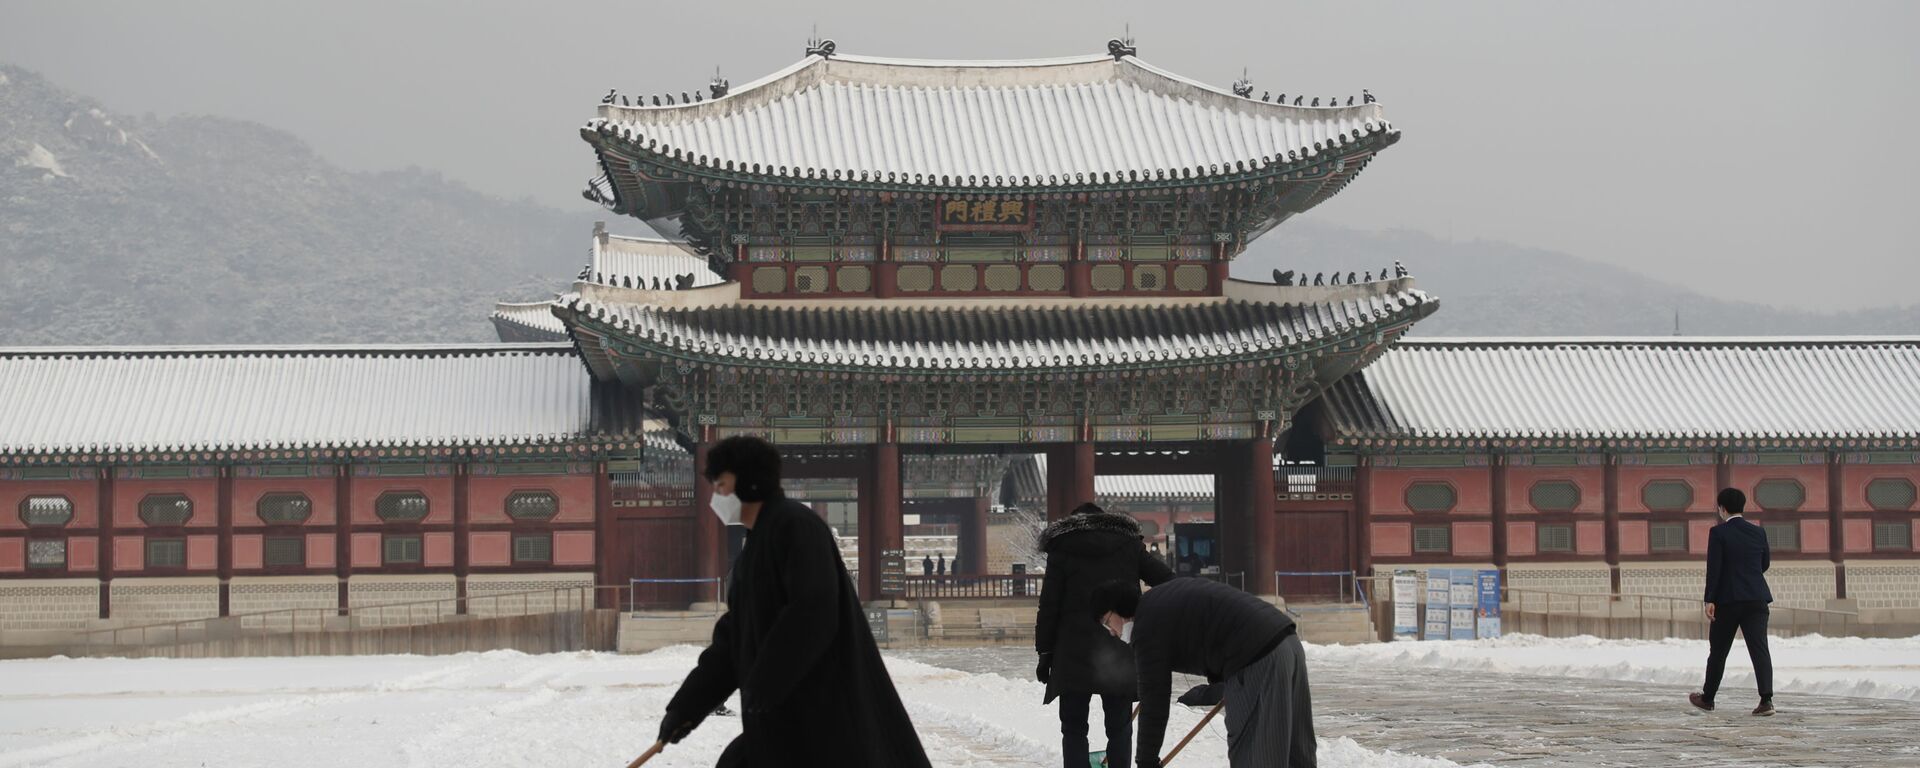 أشخاص يرتدون كمامات كإجراء احترازي ضد فيروس كورونا يقومون بإزالة الثلوج في قصر غيونغبوك، أحد المعالم المعروفة في كوريا الجنوبية، في سيئول، 13 يناير 2021. - سبوتنيك عربي, 1920, 20.08.2021